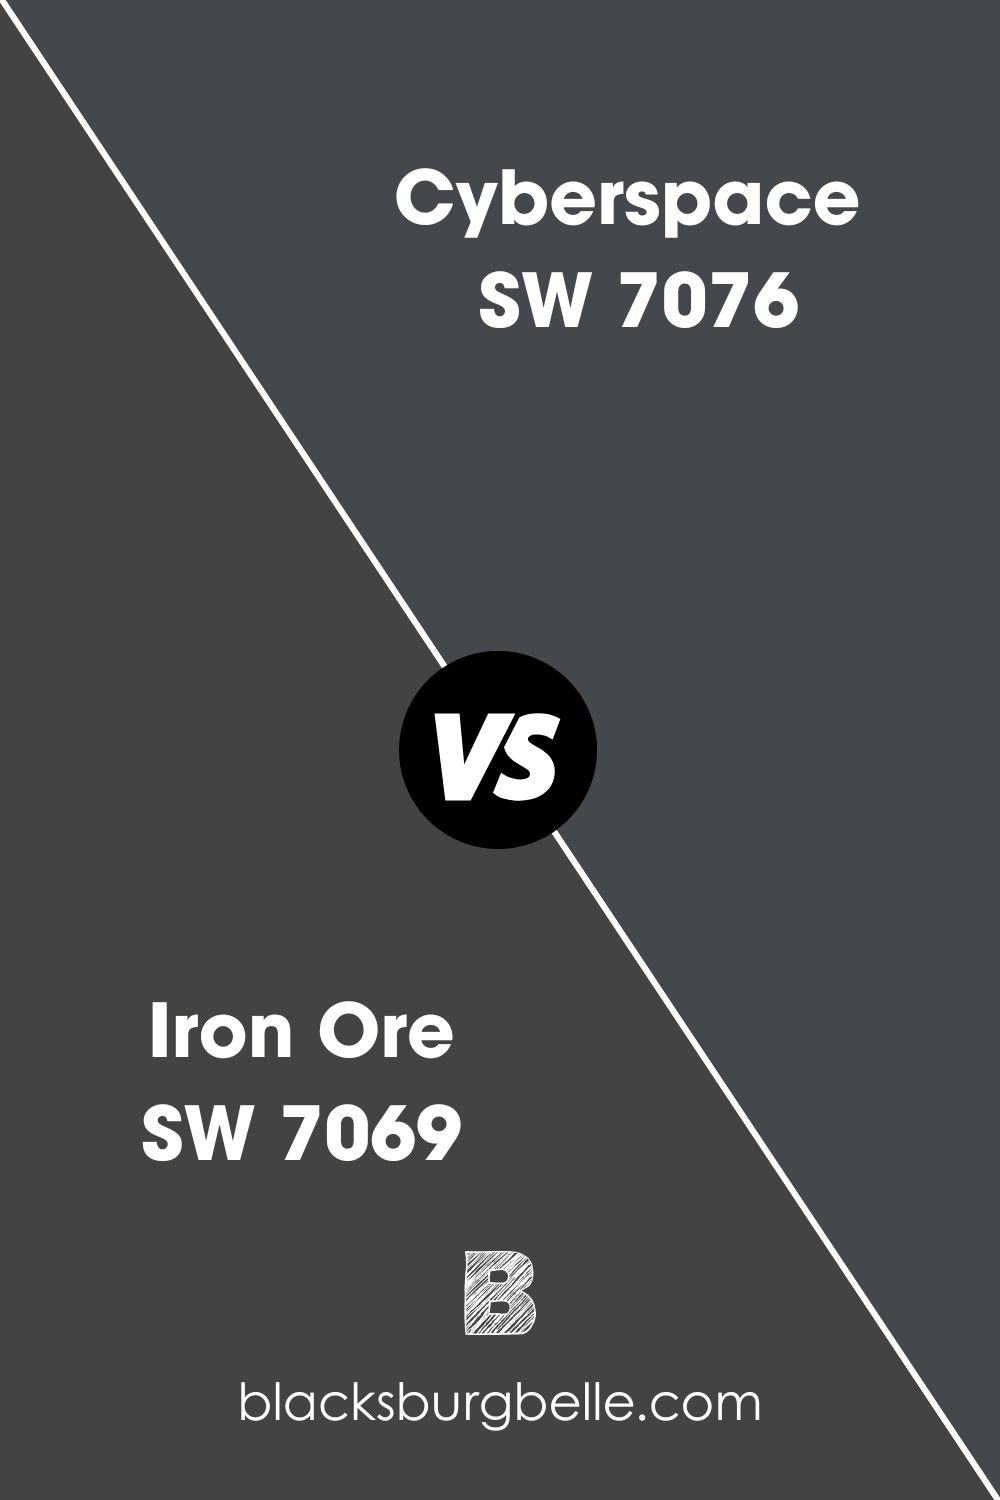 Sherwin Williams Cyberspace vs Iron Ore